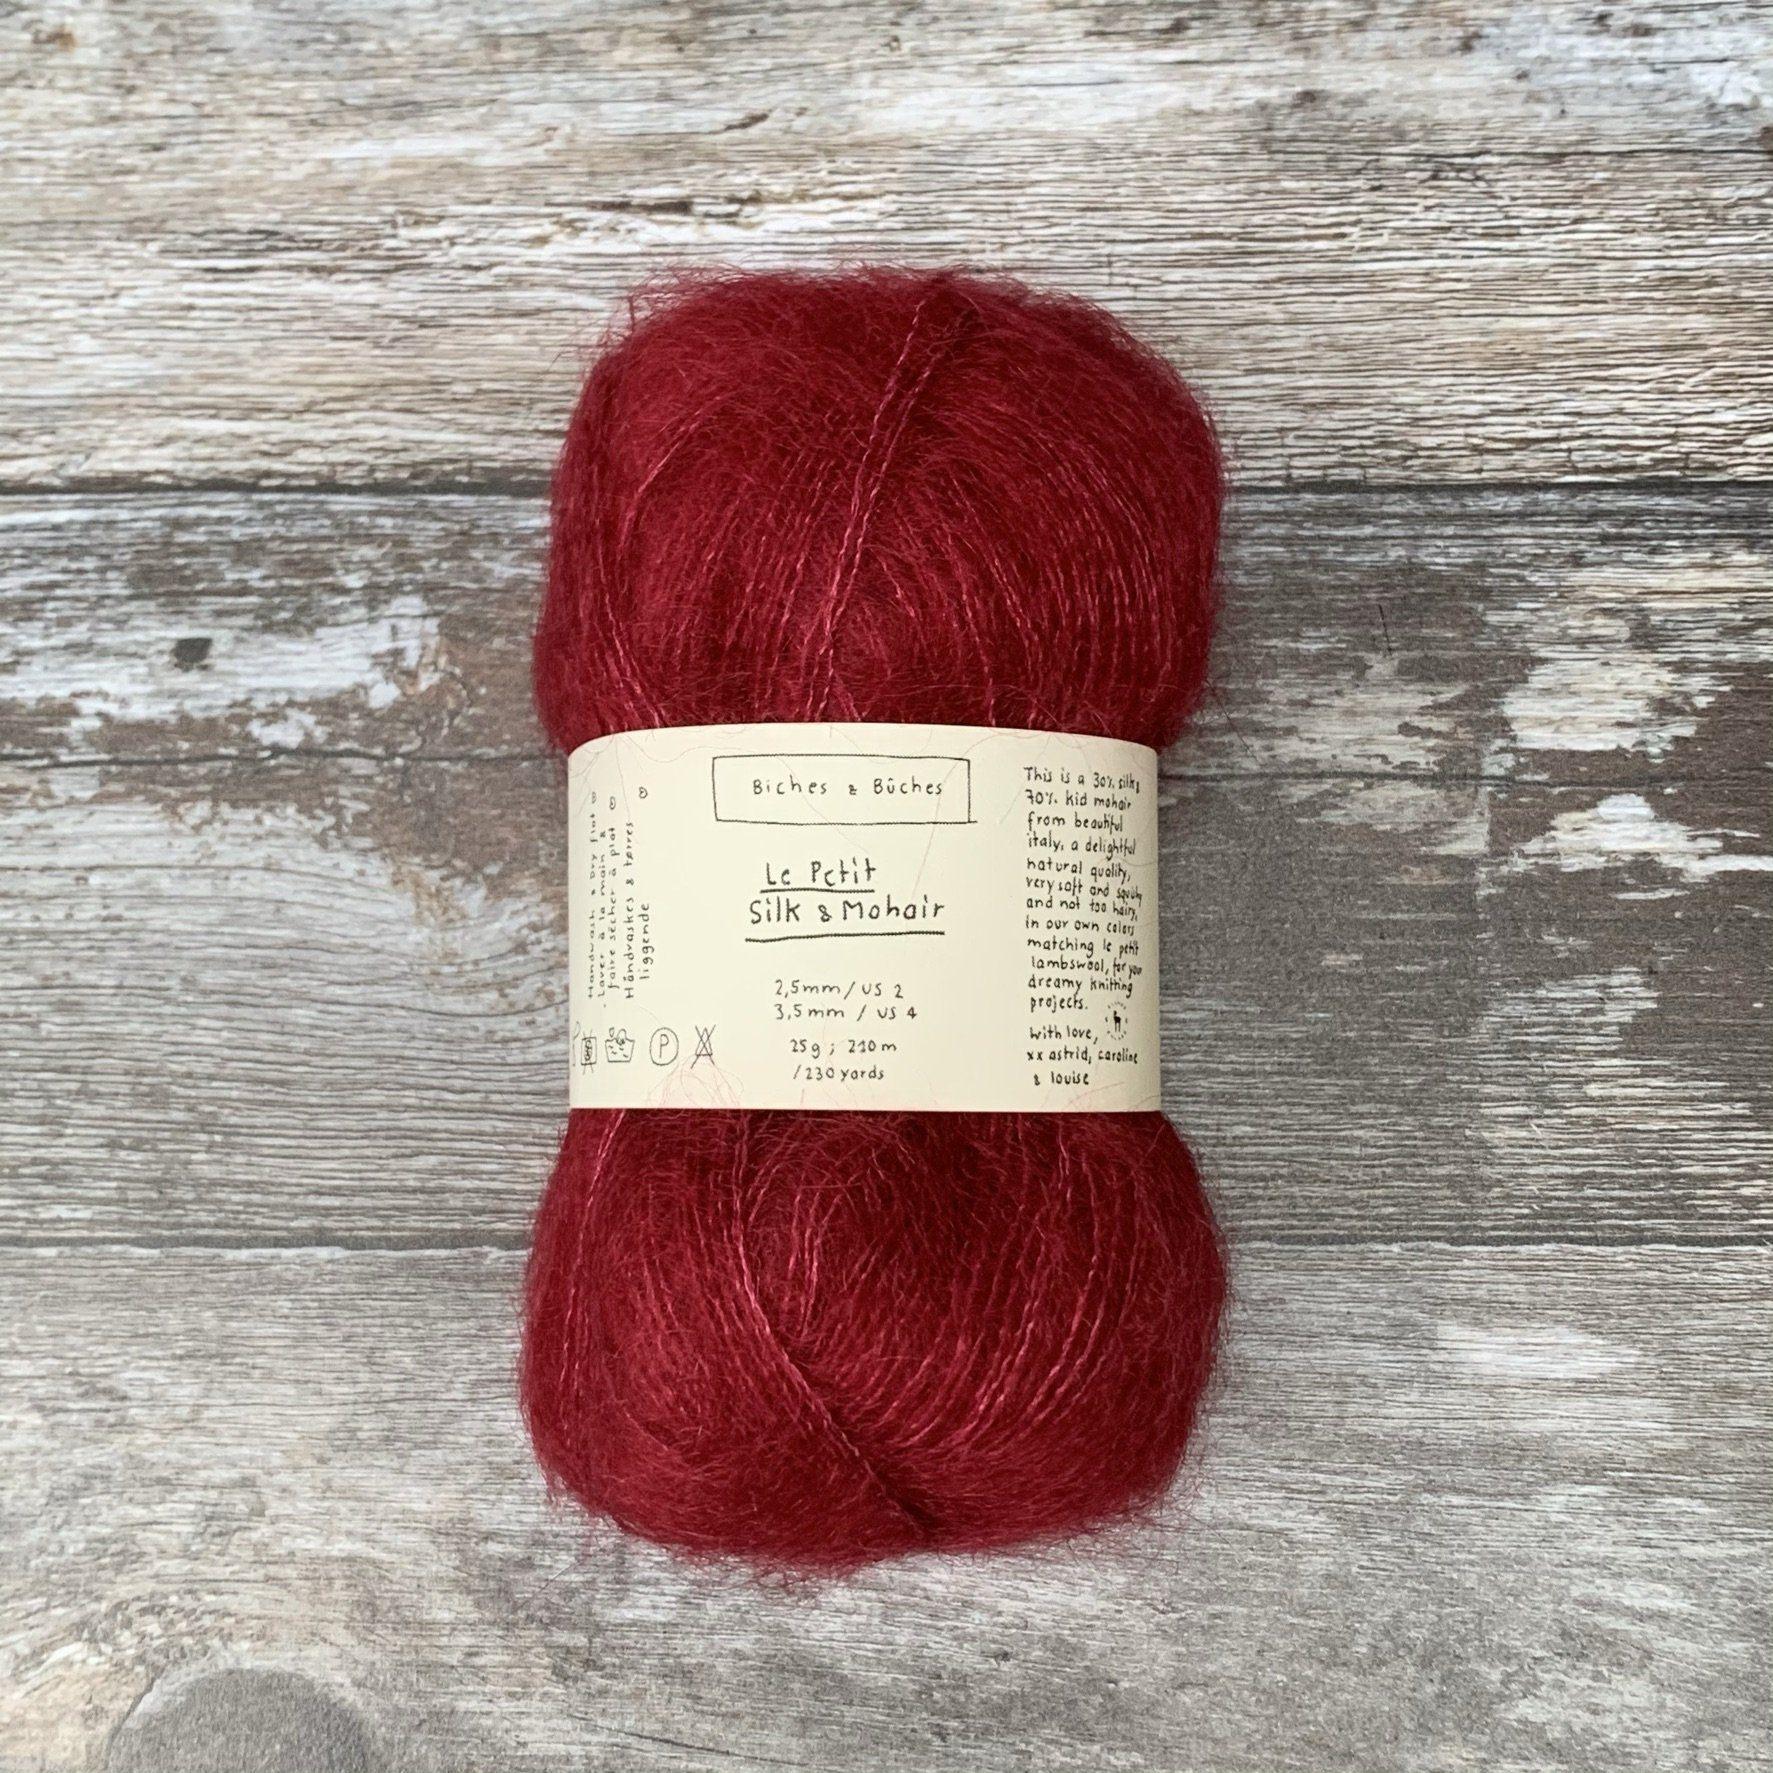 Biches & Bûches Biches & Bûches Le Petit Silk & Mohair - Norwegian Red - Lace Knitting Yarn